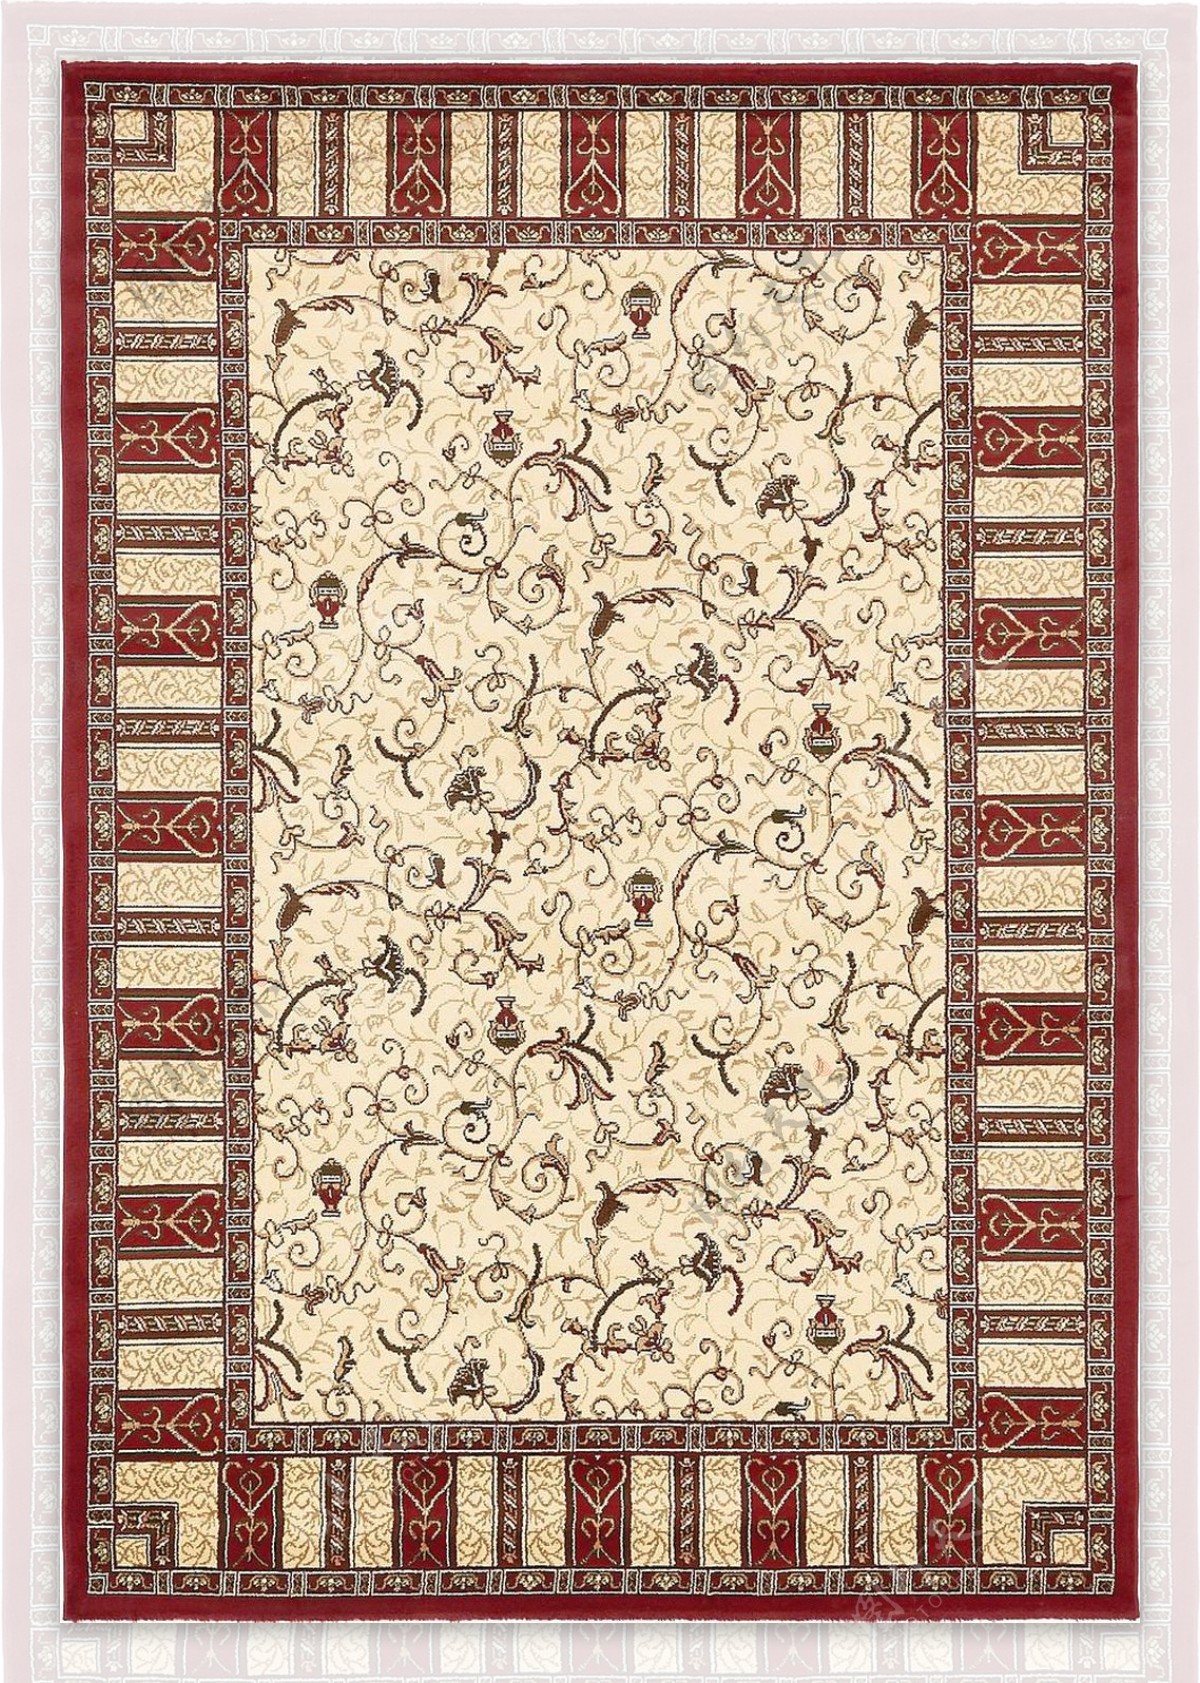 古典经典地毯素材